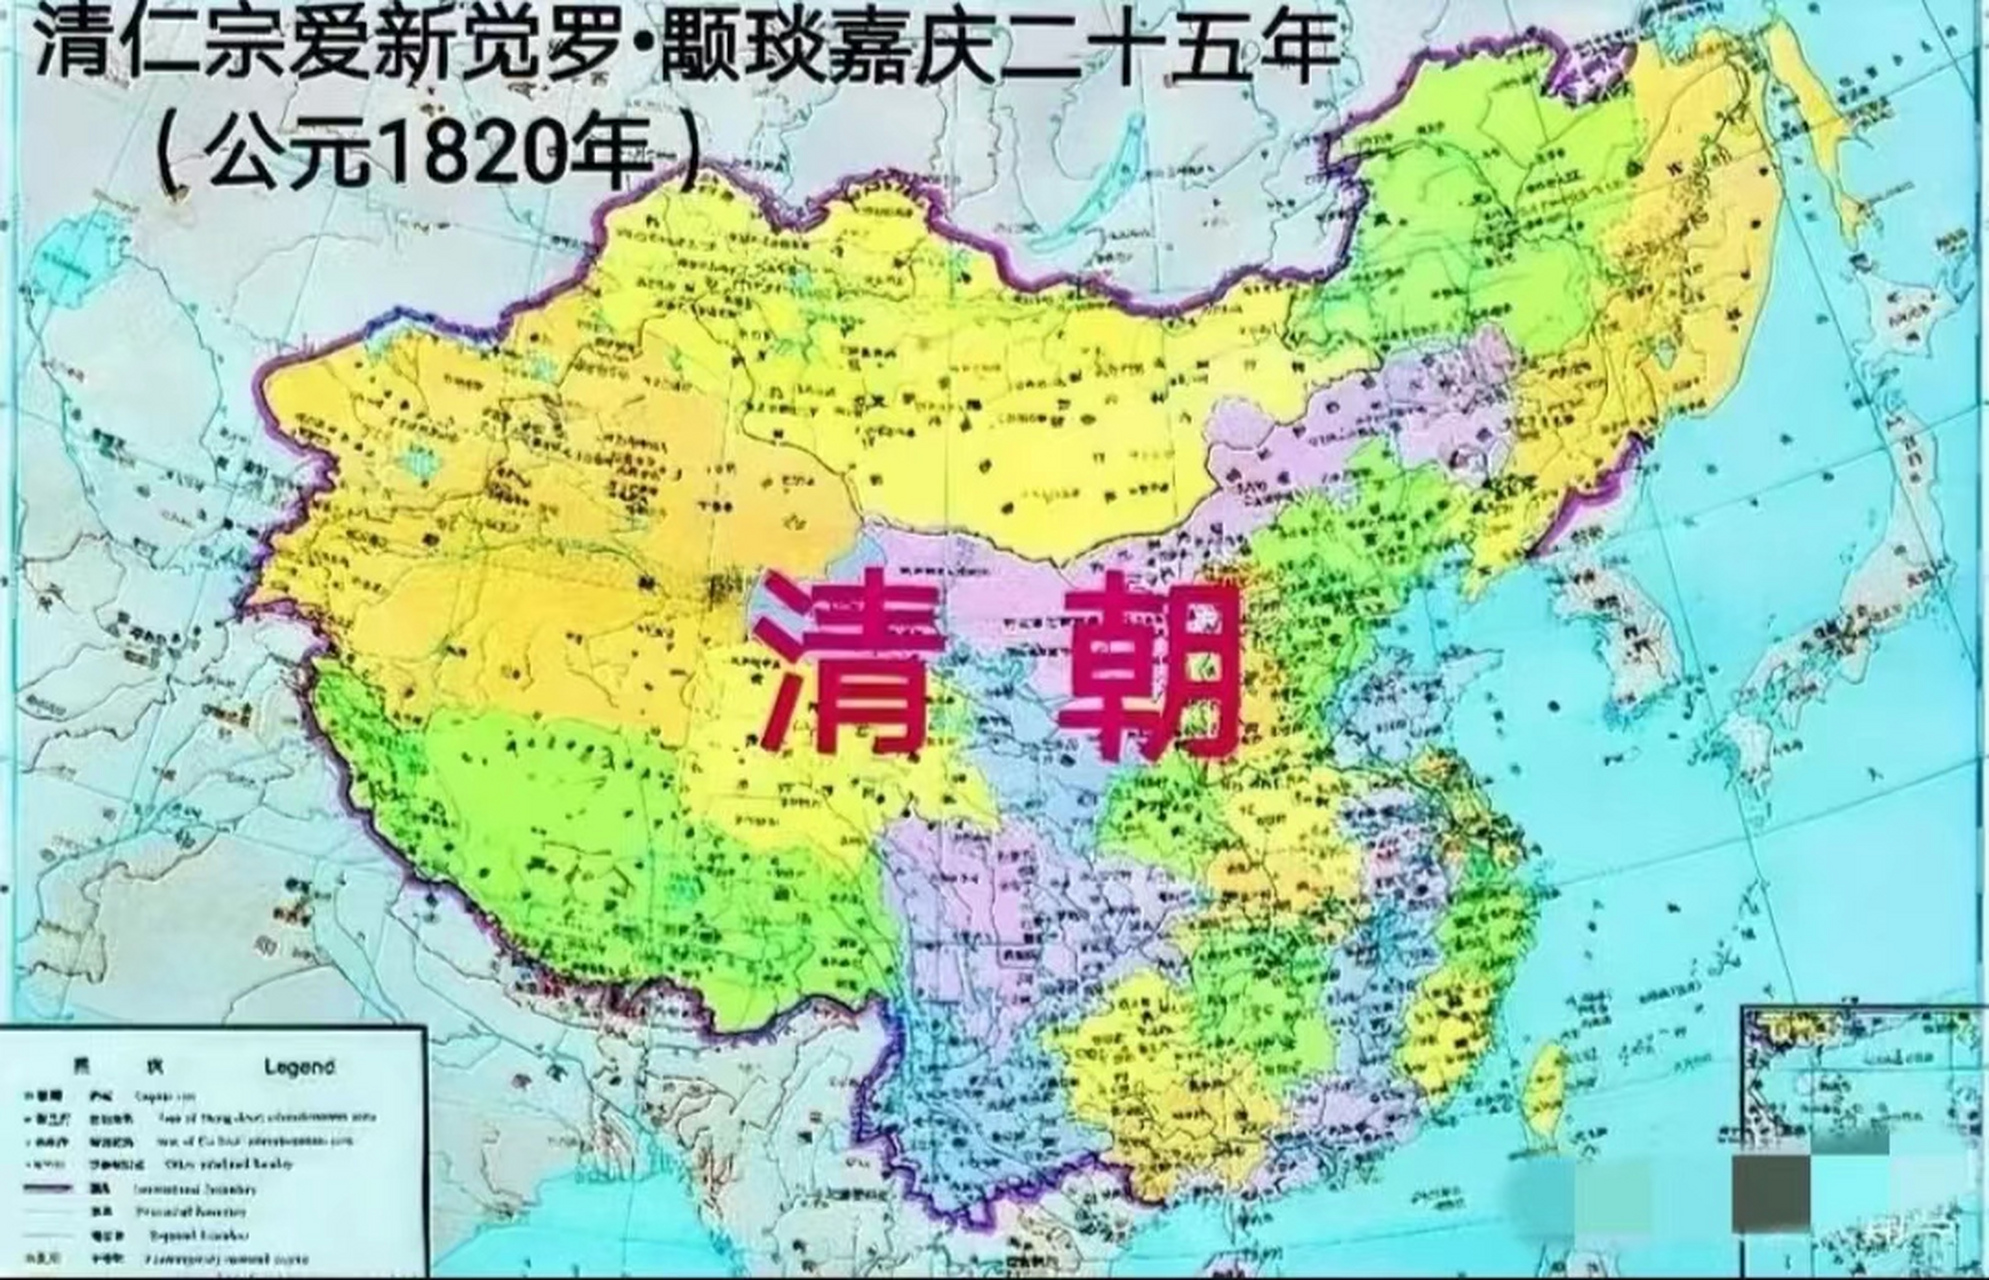 清朝疆域图全盛时期图片